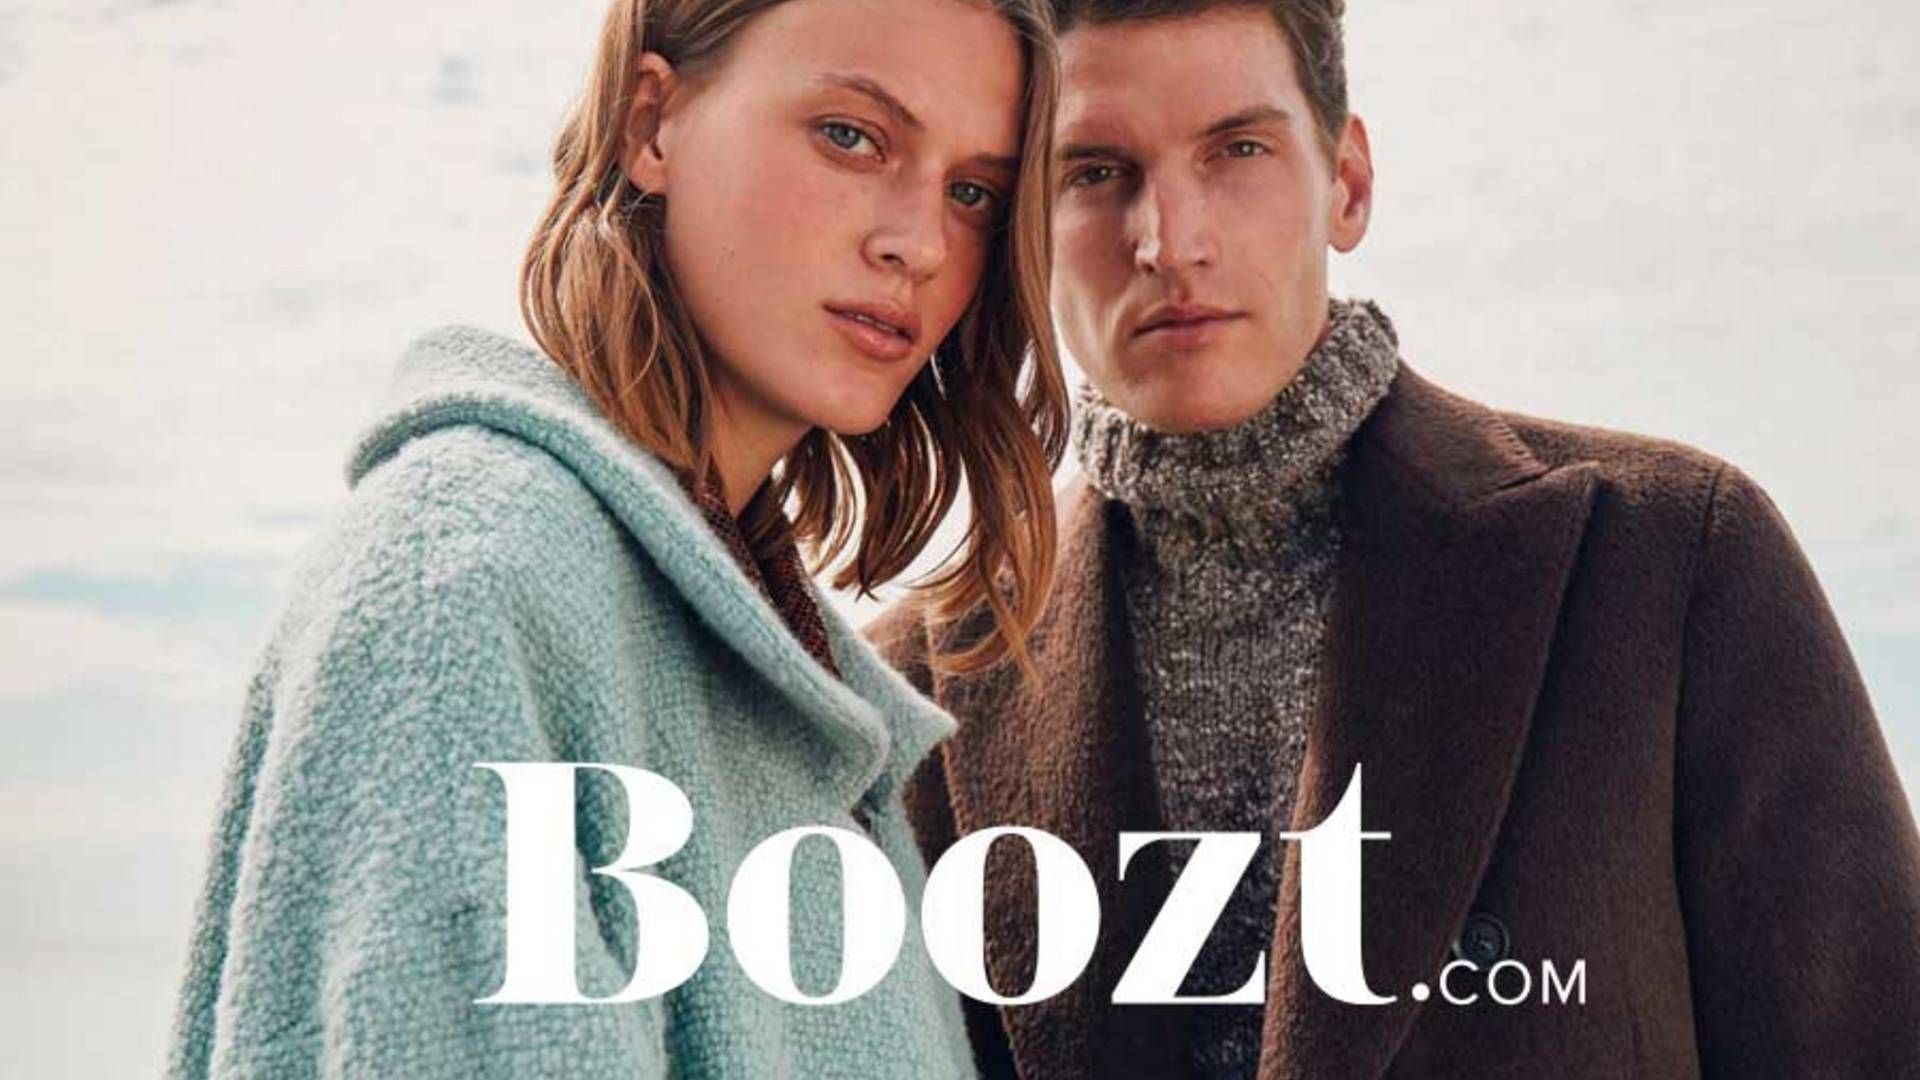 Online stormagasinet Boozt forhandler mærkevarer inden for modetøj og tilbehør. | Foto: Boozt/PR